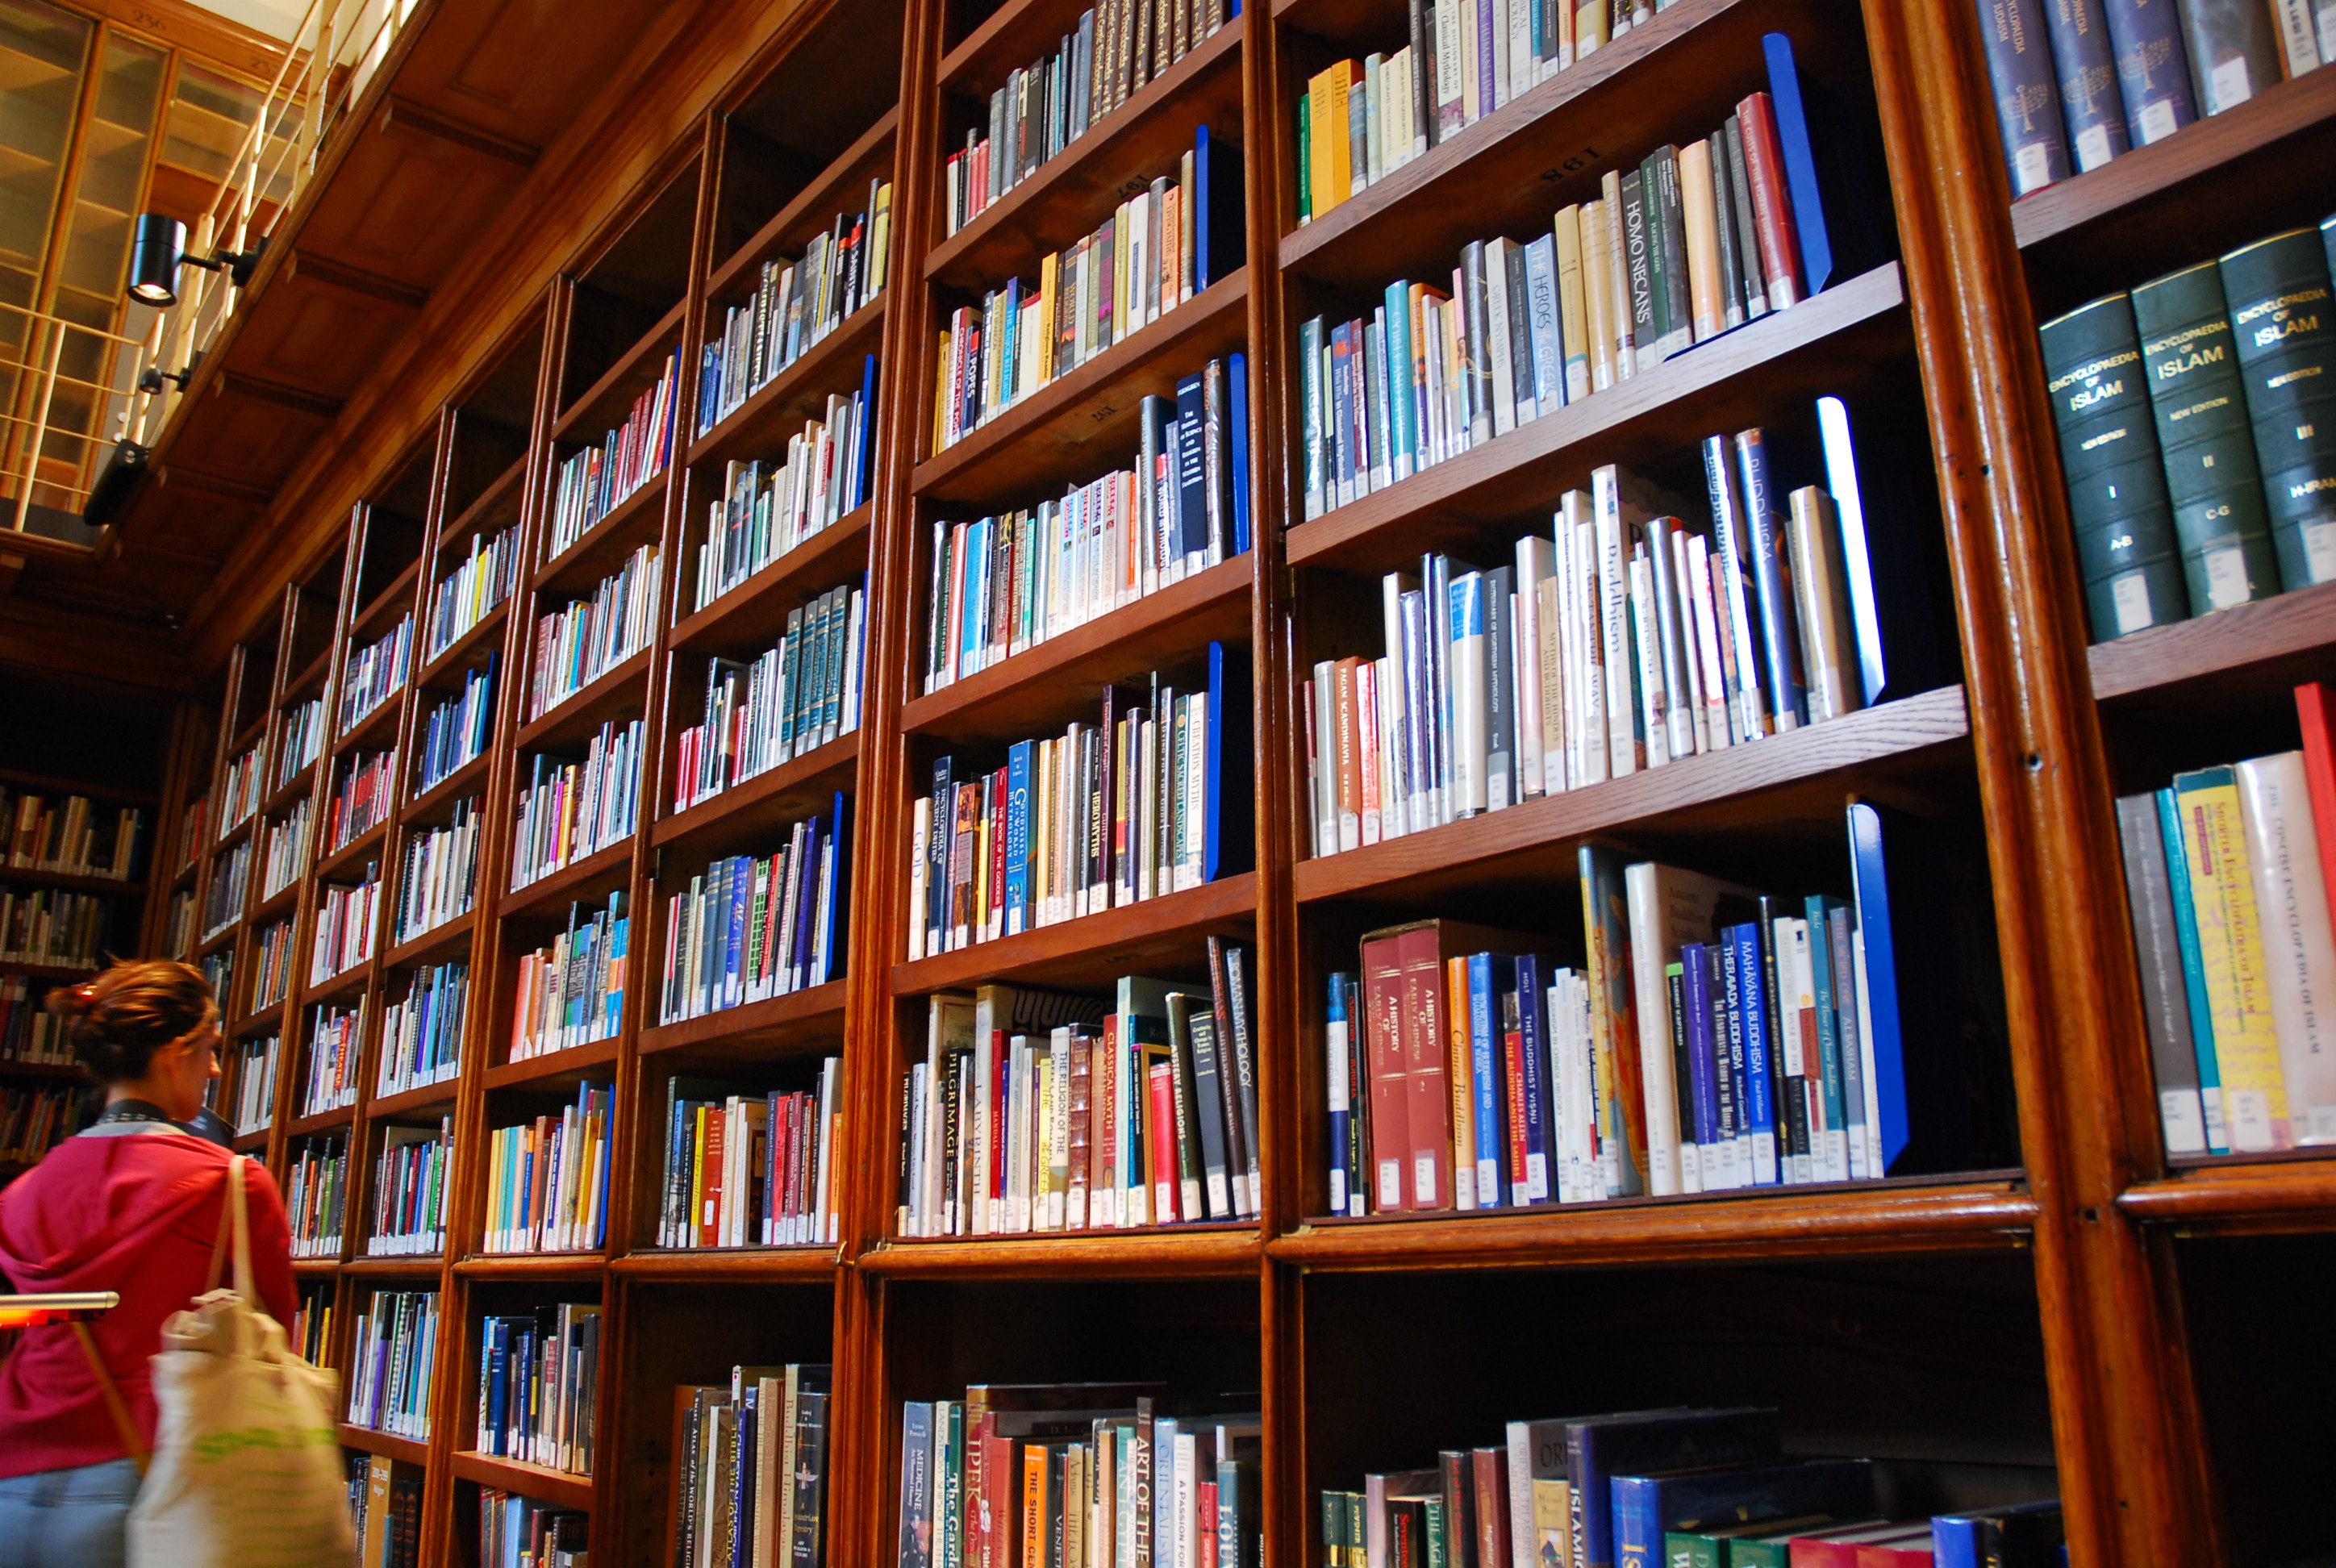 Picture libraries. Стеллажи для книг в библиотеку. Книжные полки в библиотеке. Полки с книгами в библиотеке. Красивая библиотека.